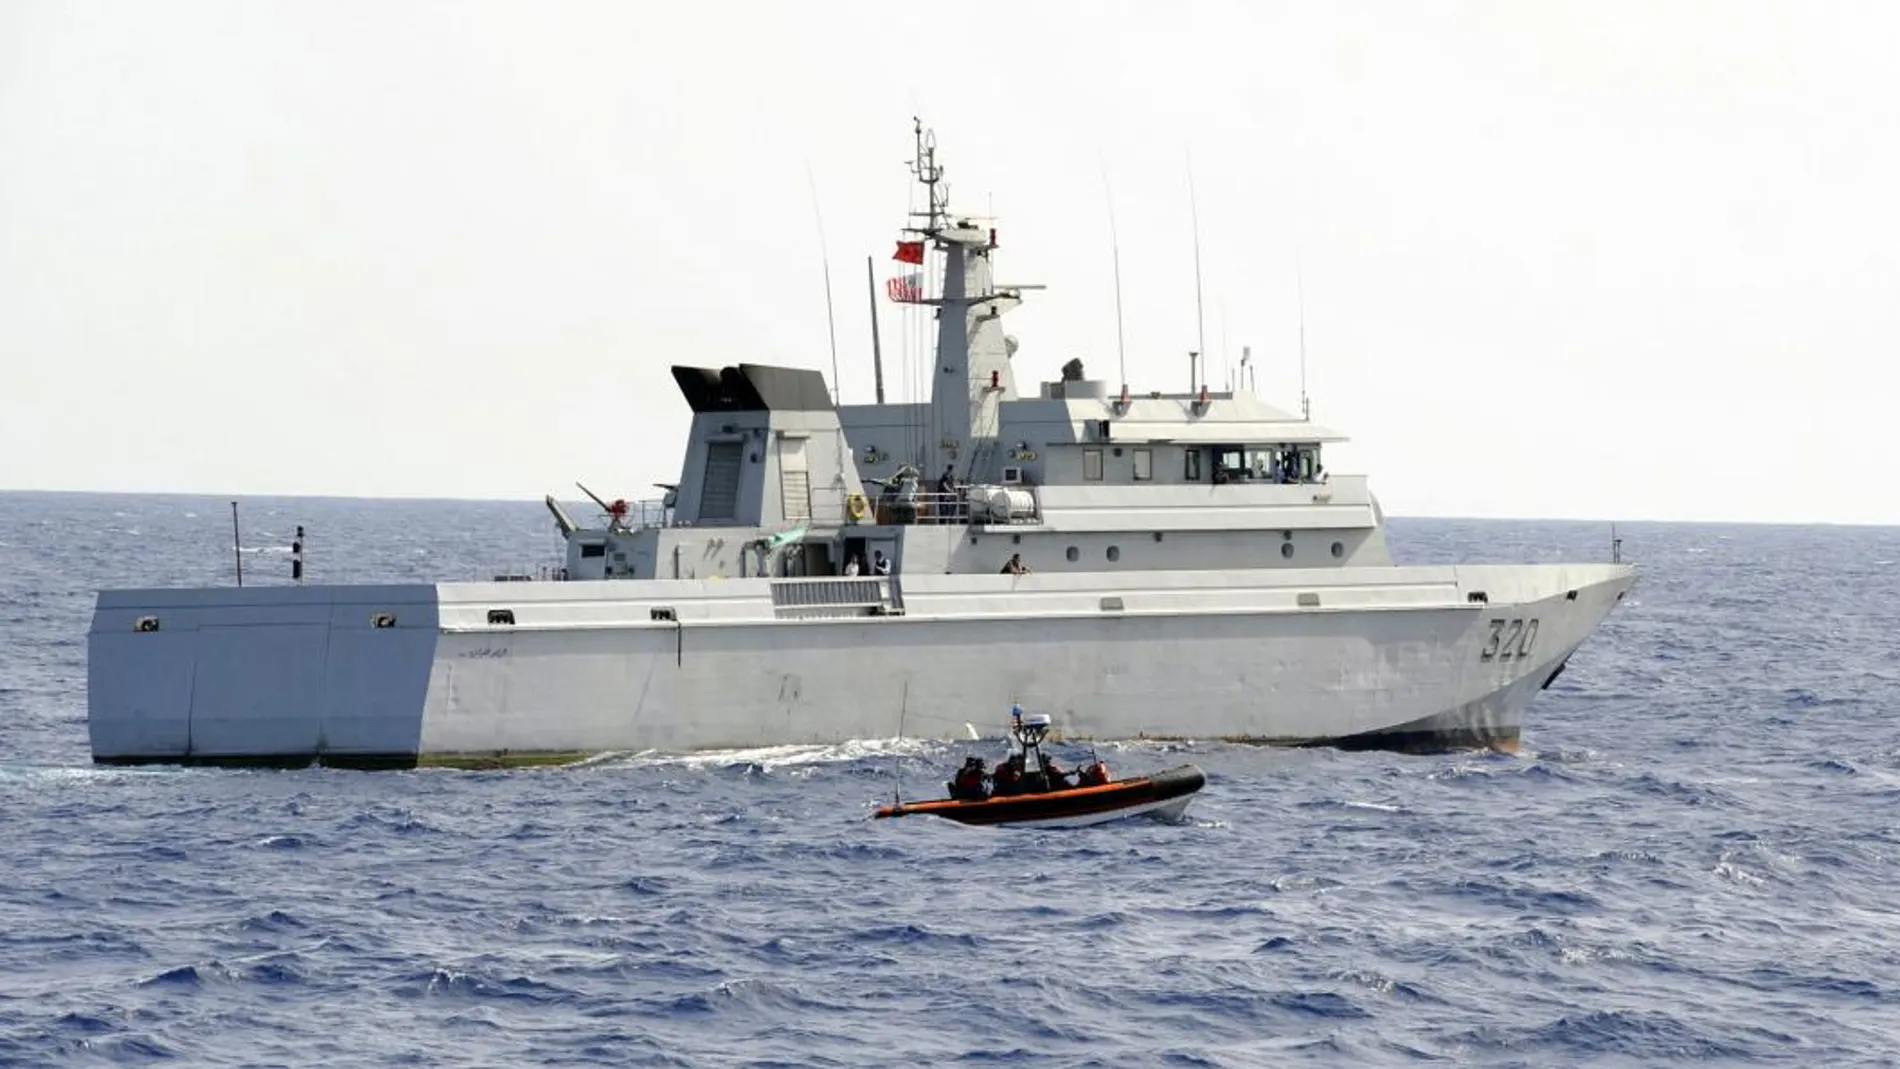 Un barco de la Marina marroquí/Foto: U.S. Coast Guard